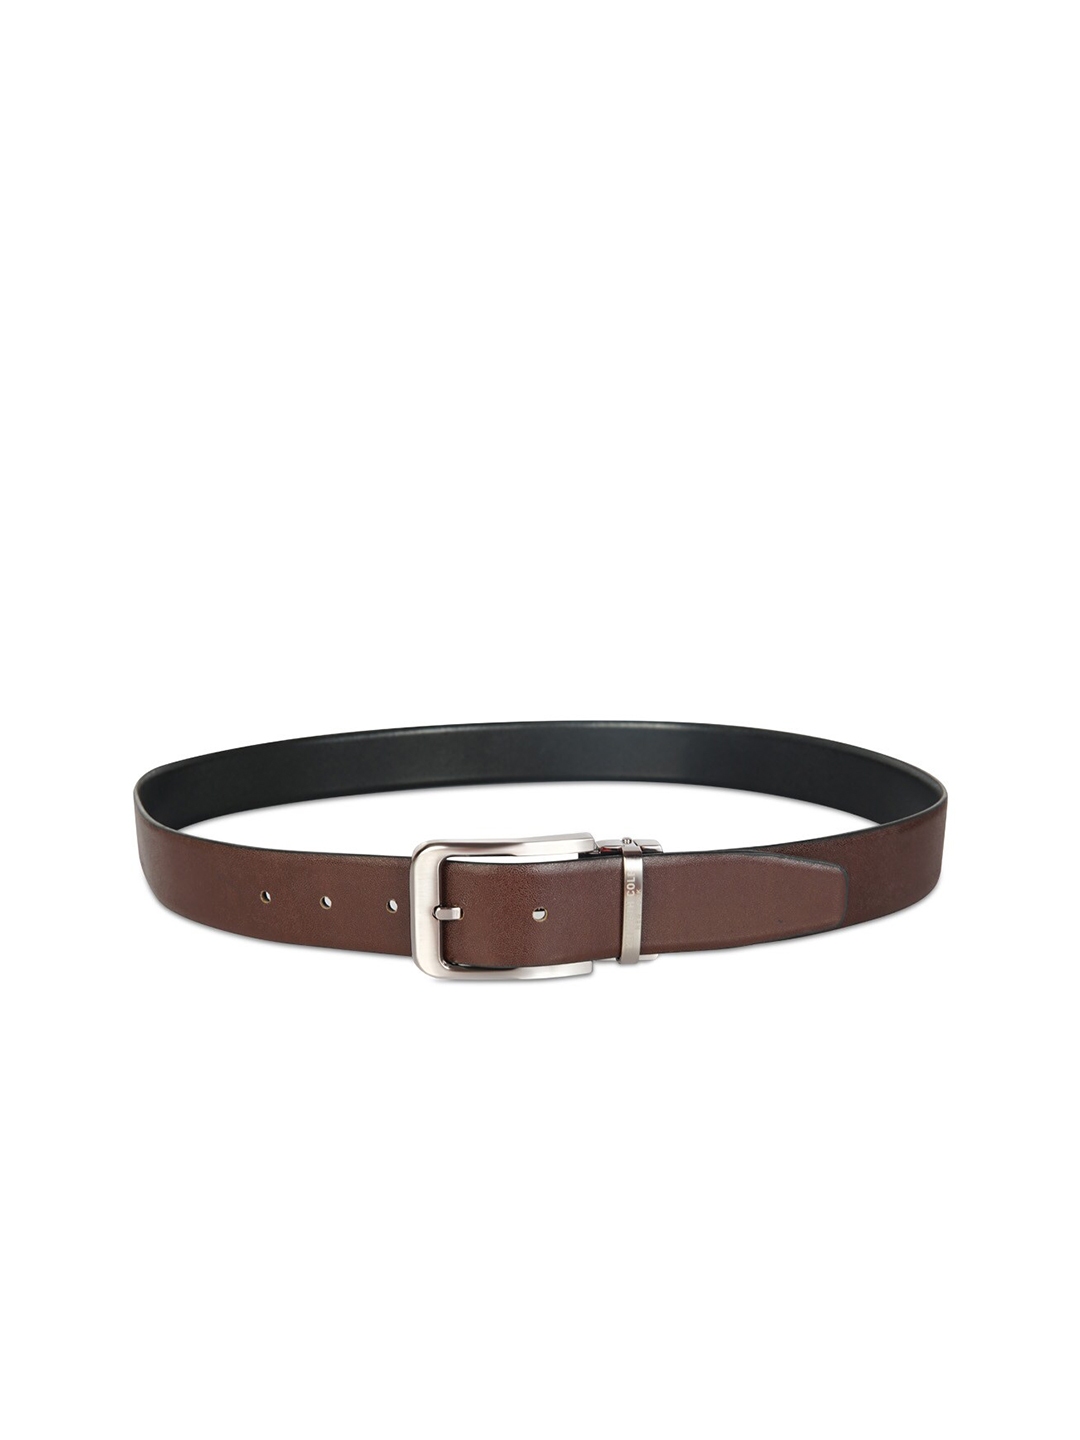 Buy Kenneth Cole Men Brown Leather Belt - Belts for Men 17904012 | Myntra